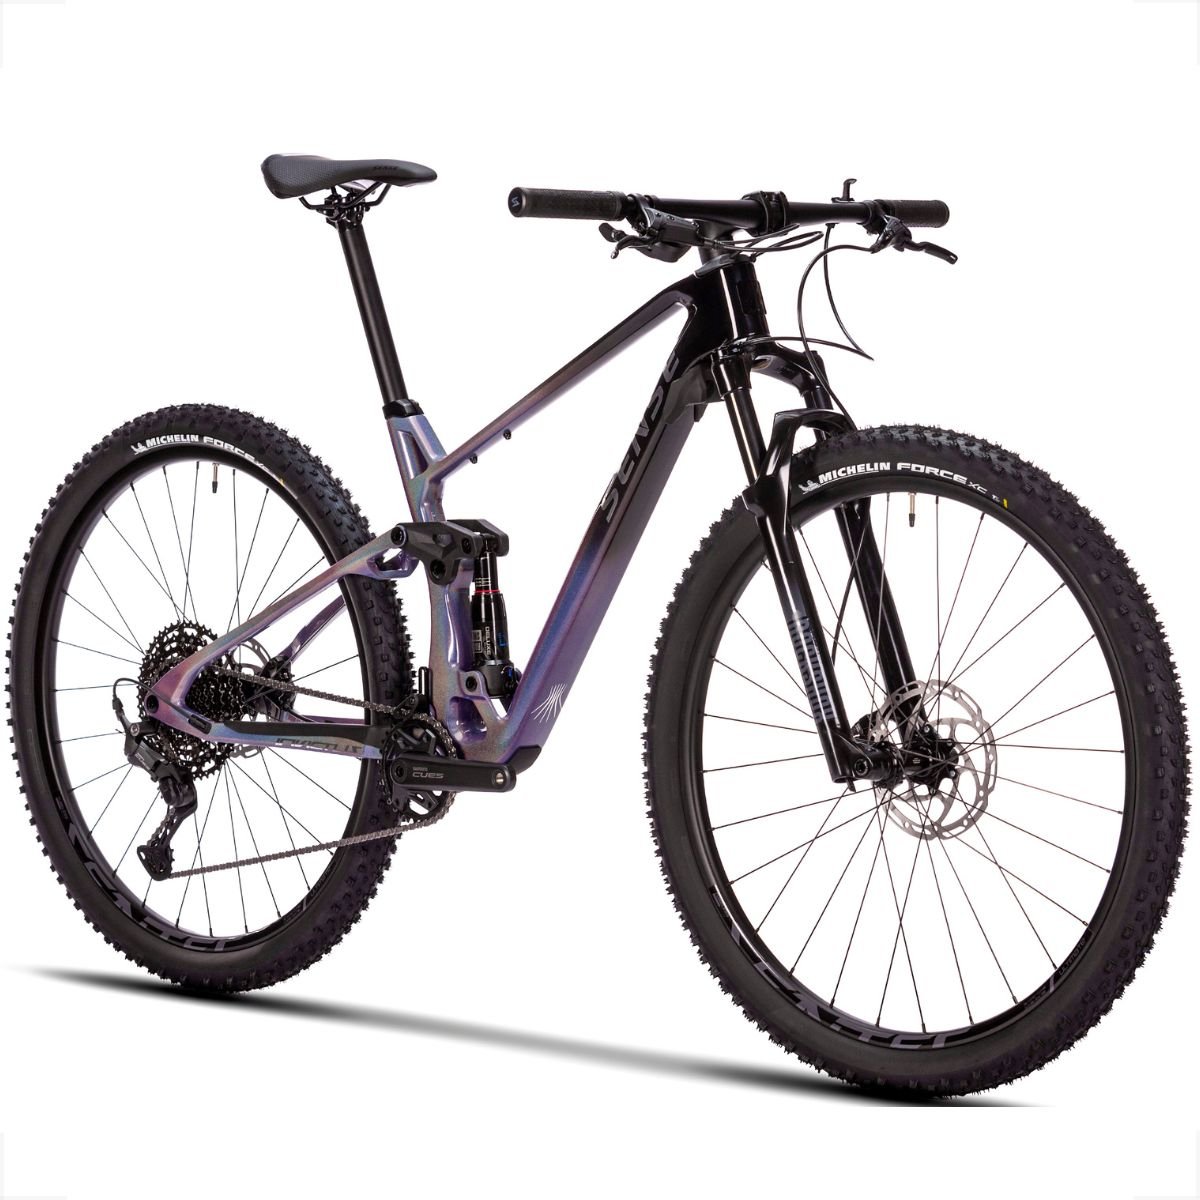 Bicicleta Full Sense Invictus Sport Carbono Shimano Cues:roxo+preto/15